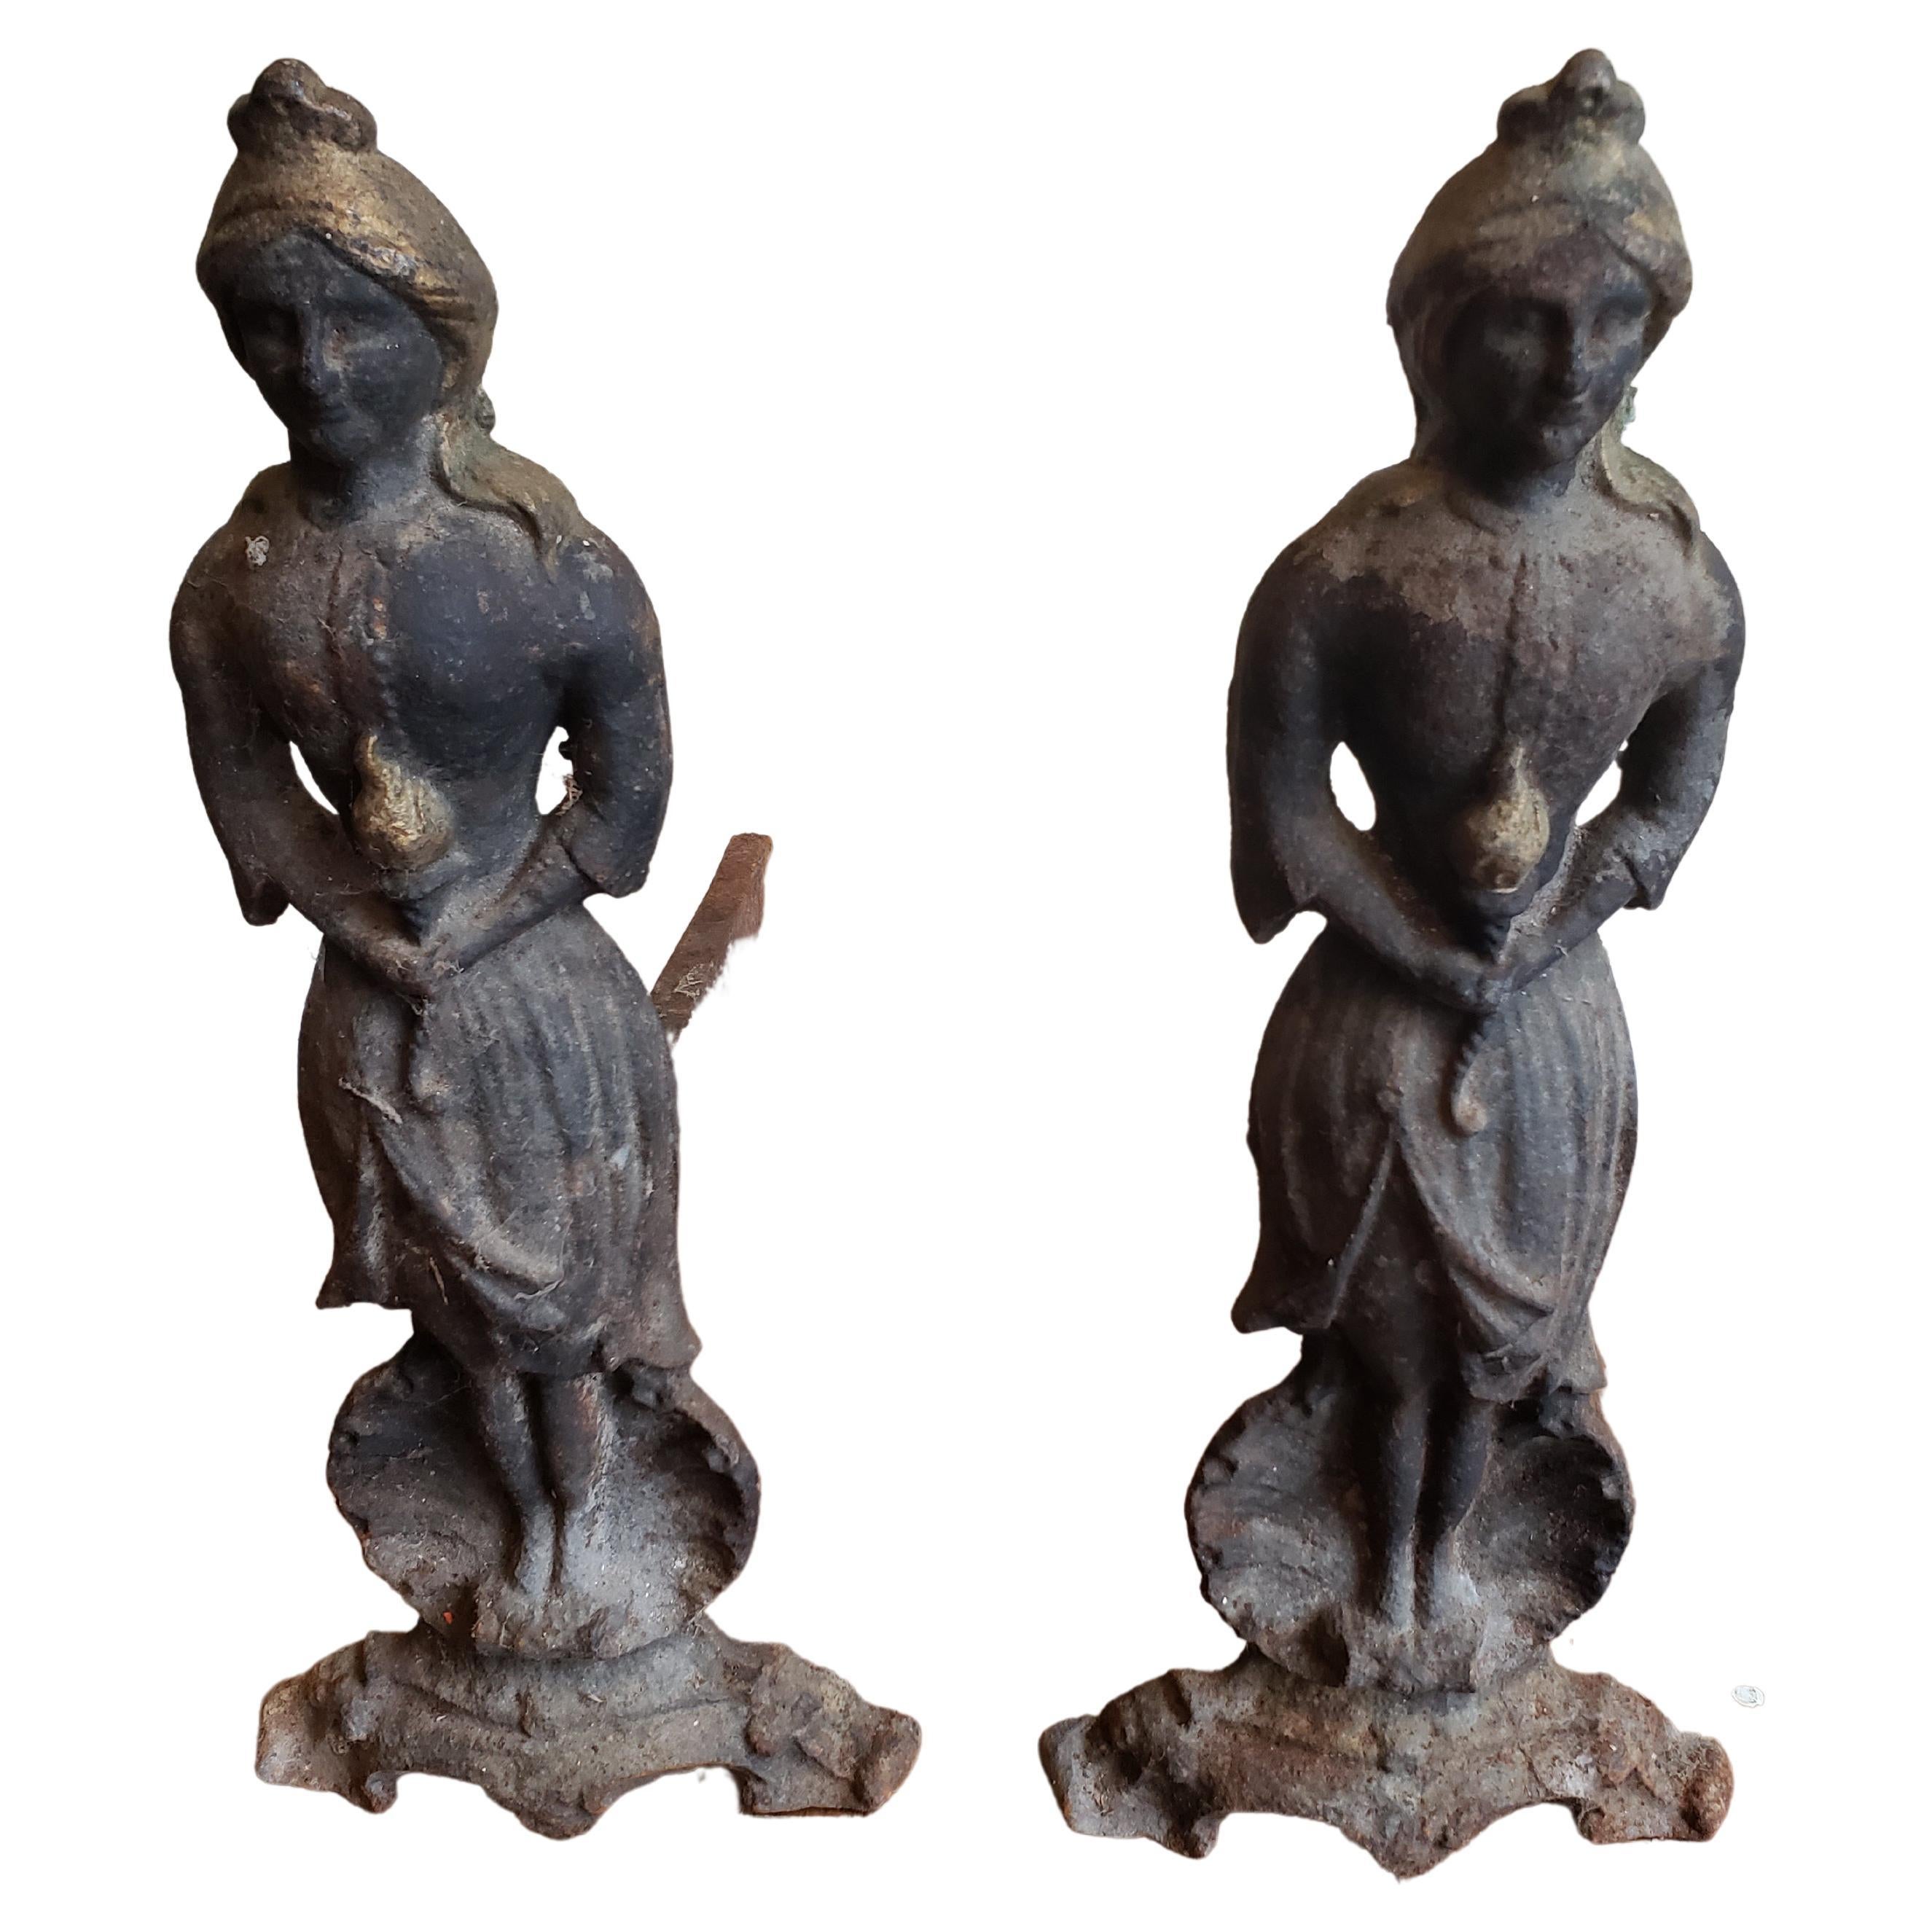 Paar antike figurale Guss- und Schmiedeeisen Kamin Andersons, ca. 1860er Jahre,
Messen Sie 7,5